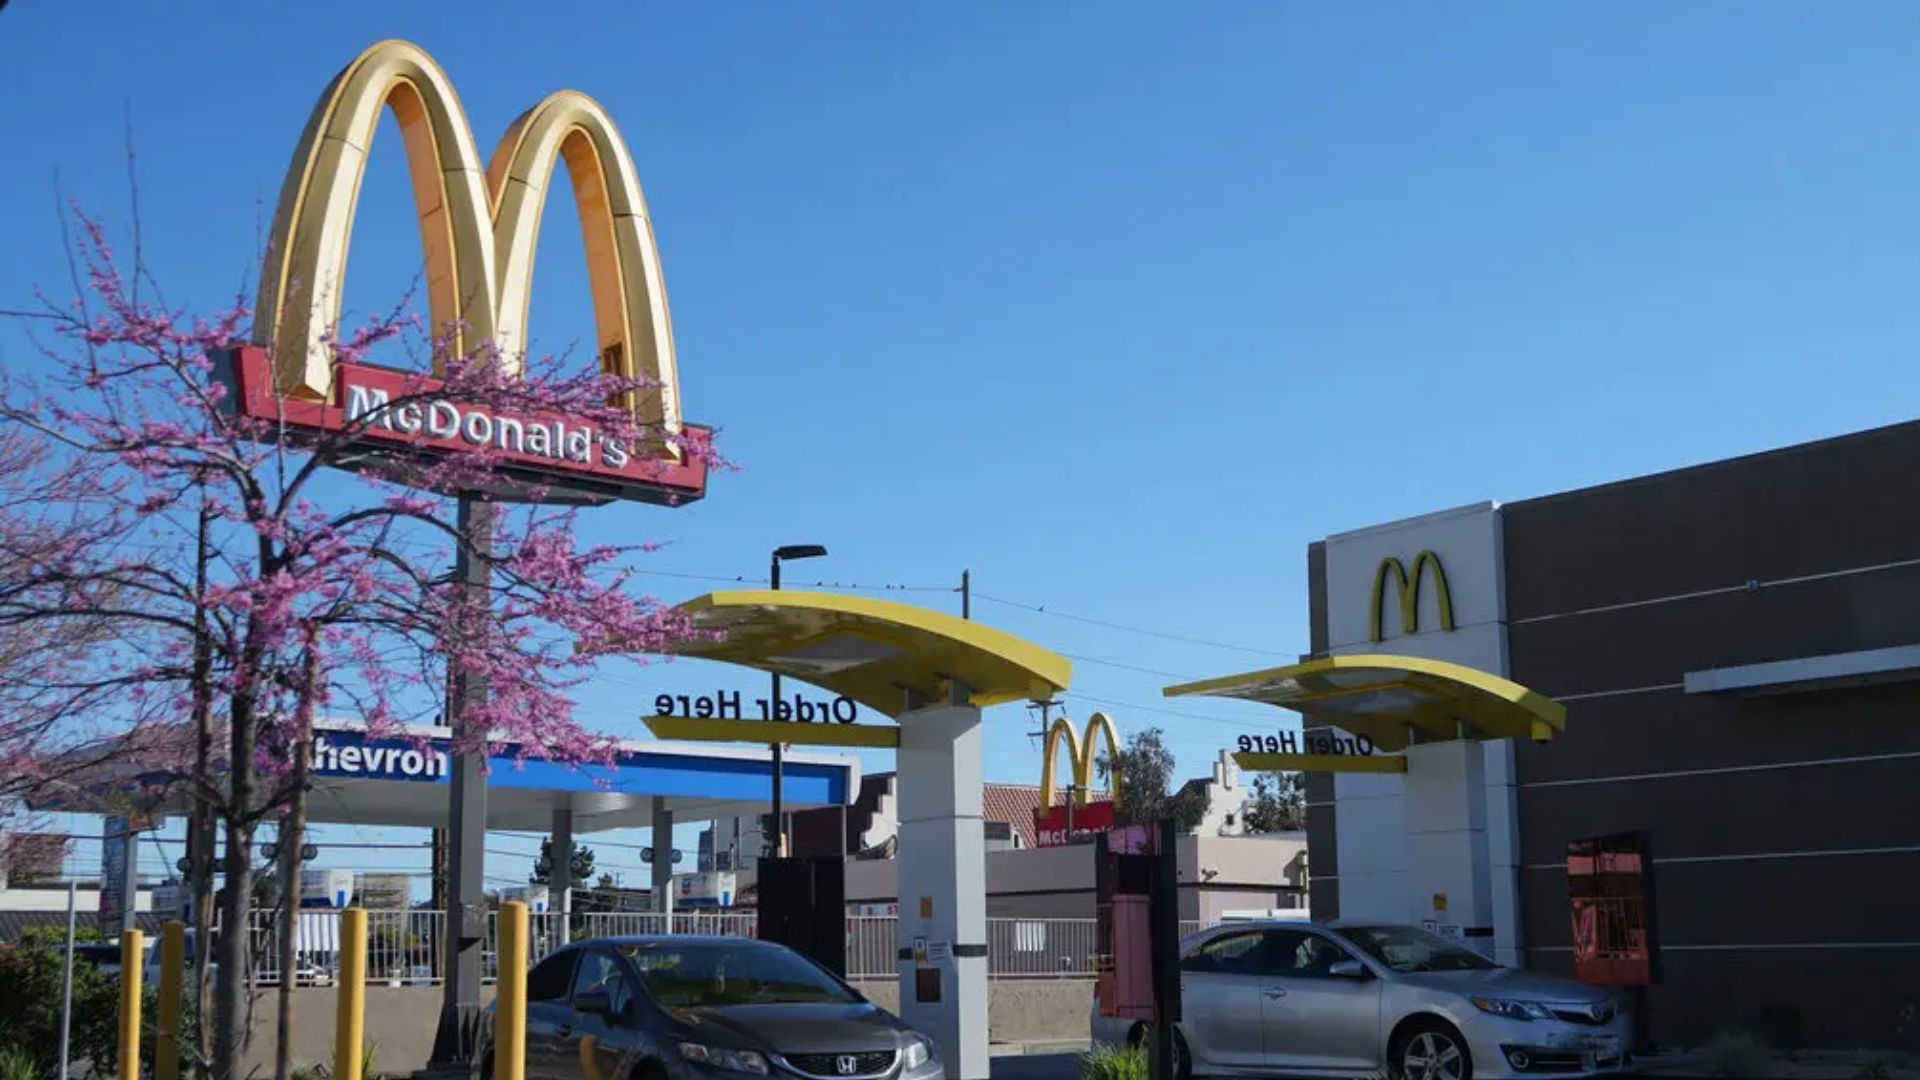 260 McNuggets? McDonald’s Ends A.I. Drive-Through Tests Amid Errors